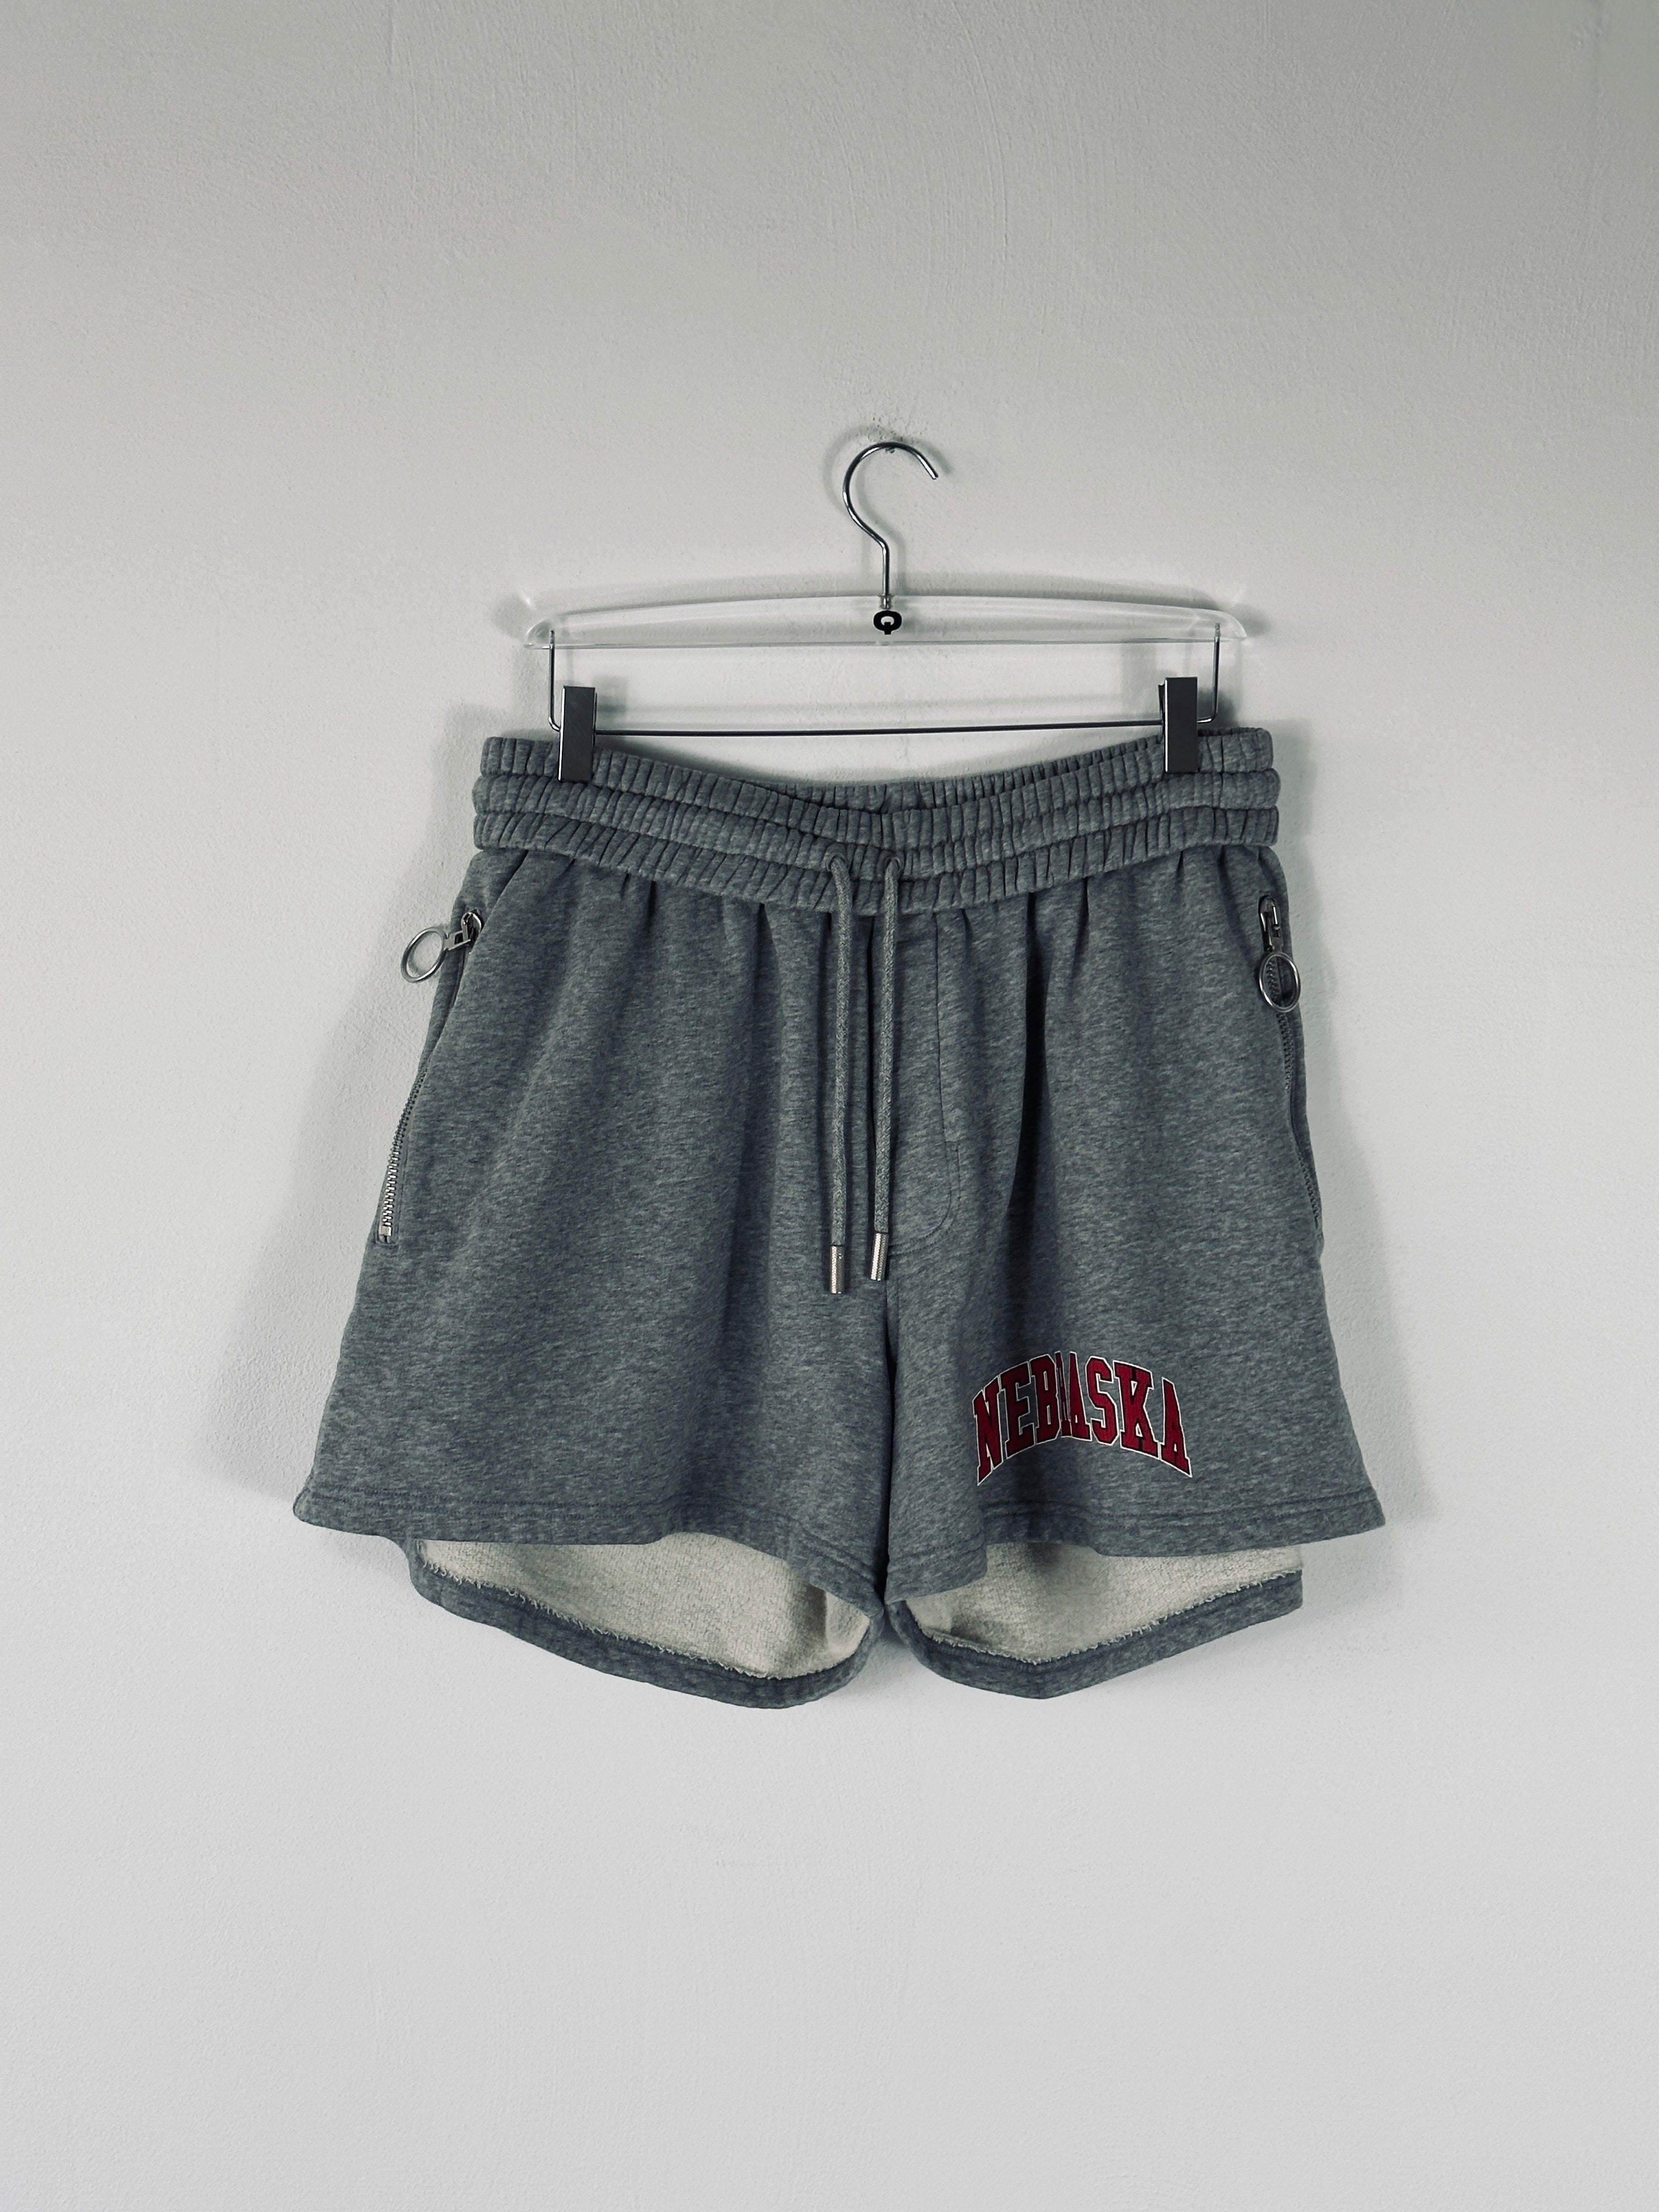 Nebraska Shorts